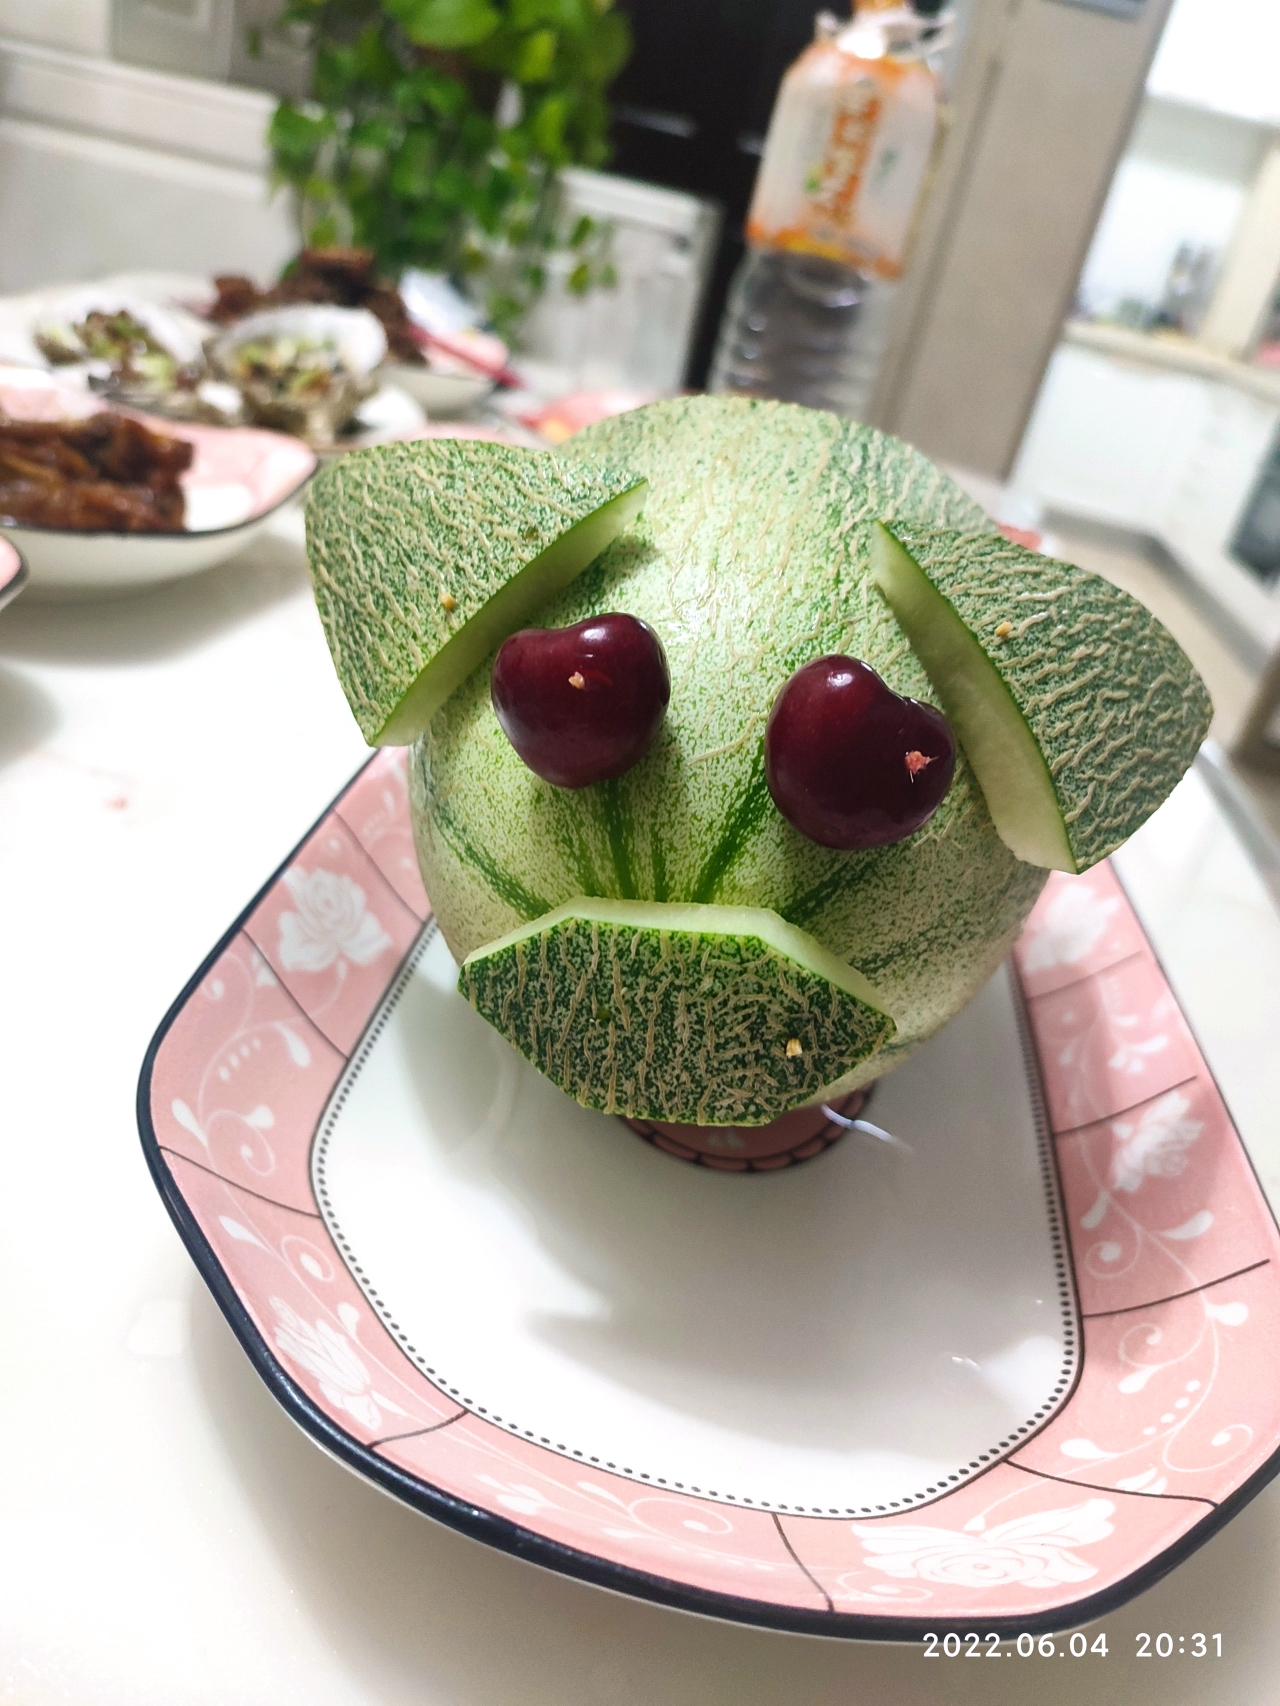 哈密瓜水果拼盘✨西瓜火龙果蓝莓✨做给小朋友吃招待客人都超好